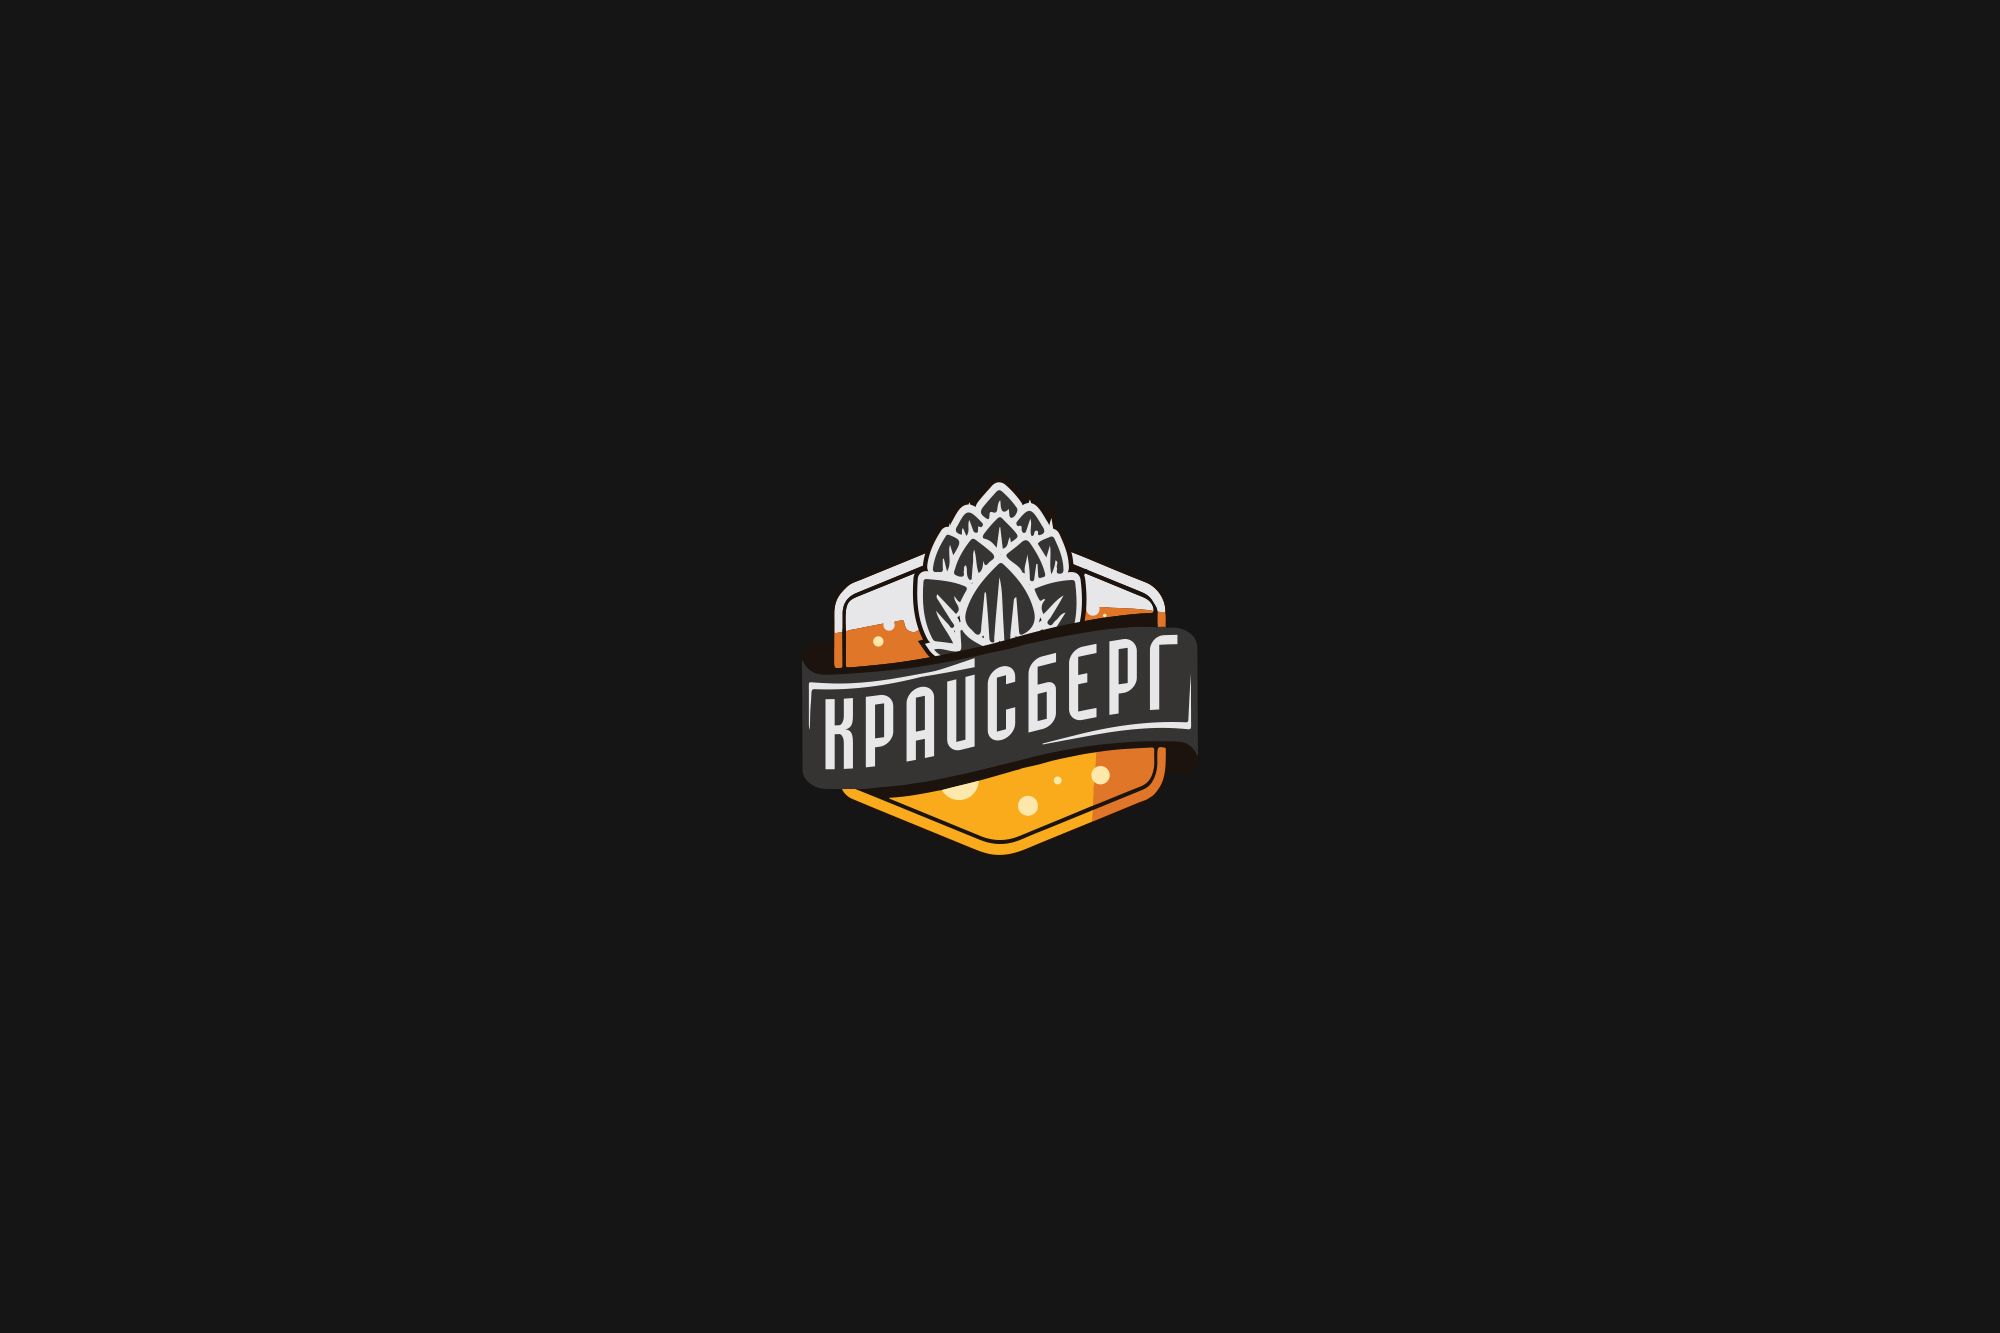 Логотип для КРАЙСБЕРГ - дизайнер Da4erry